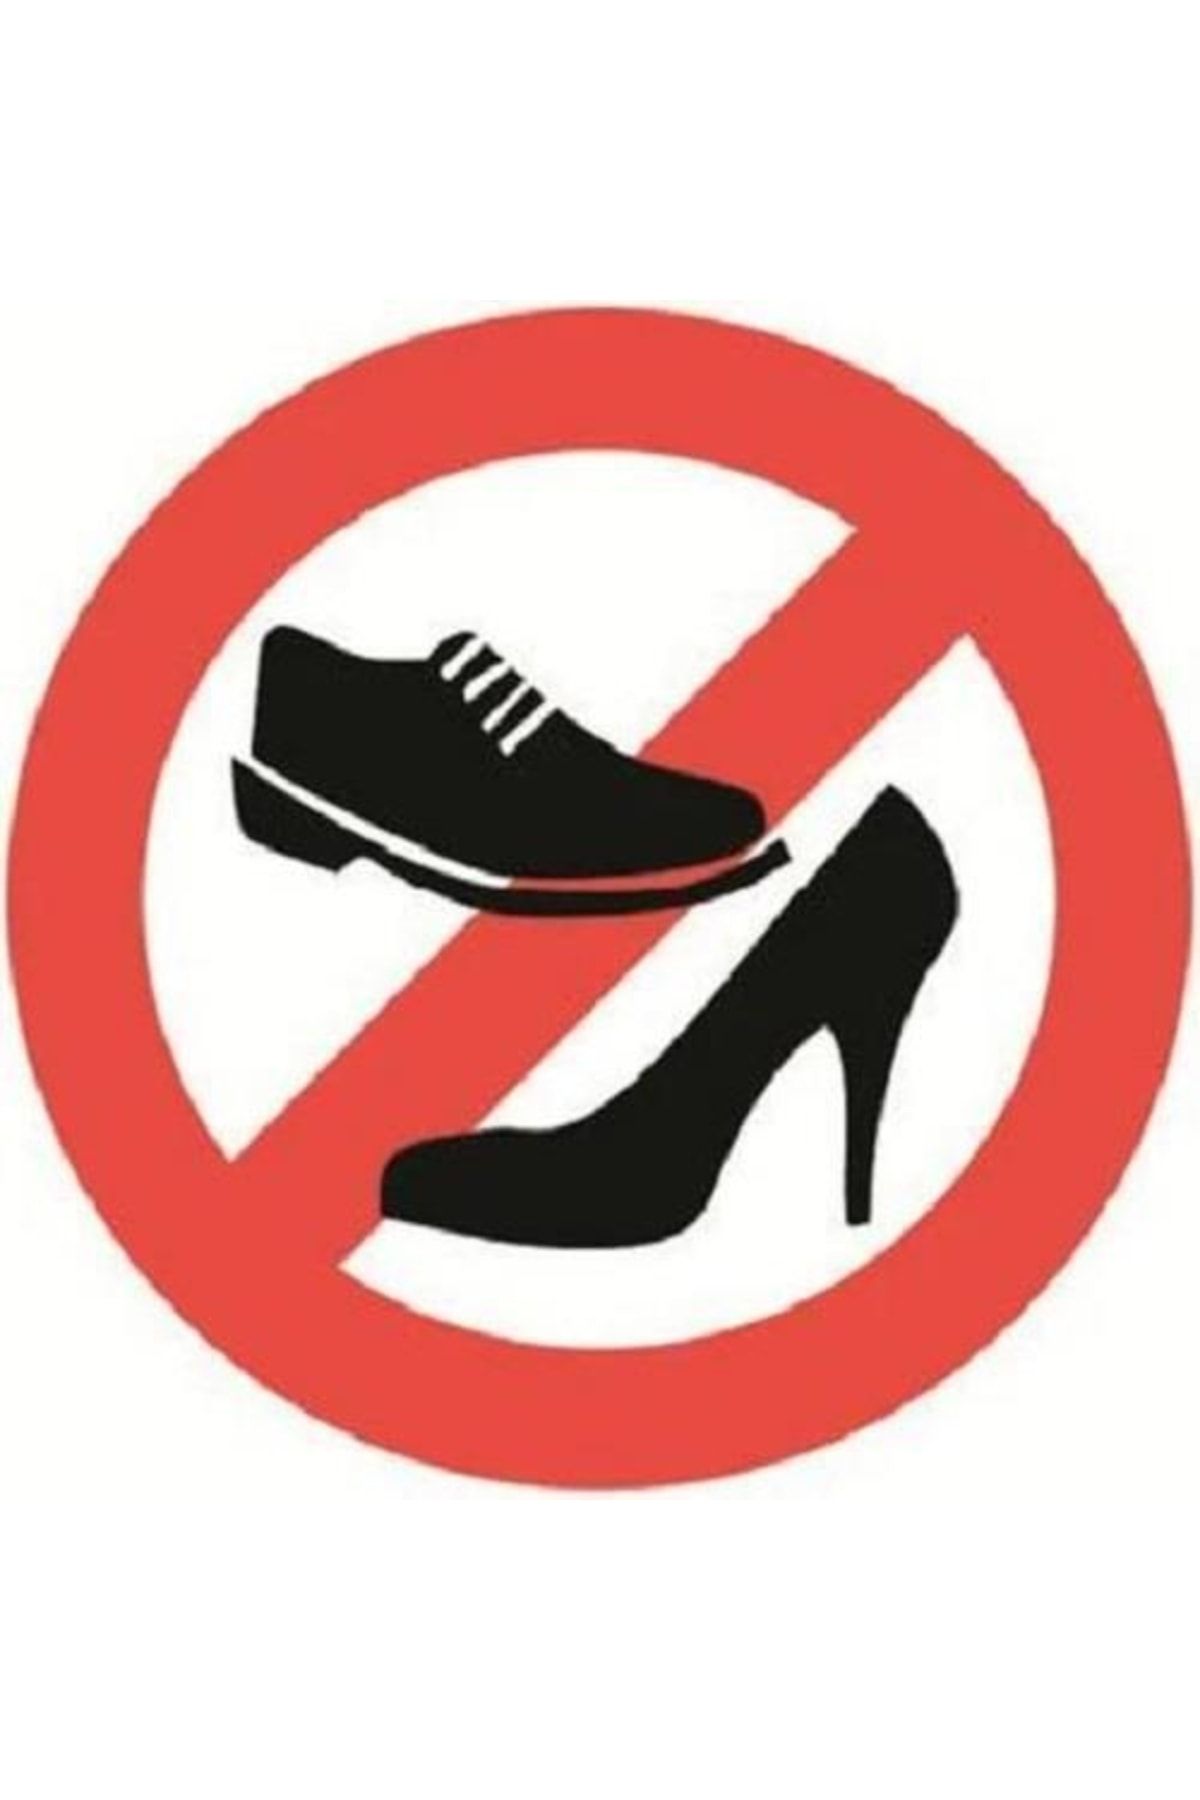 Бессменной обуви или без сменной обуви. В обуви запрещено. Знак без обуви. Знак в обуви запрещено. Вход в обуви запрещен.